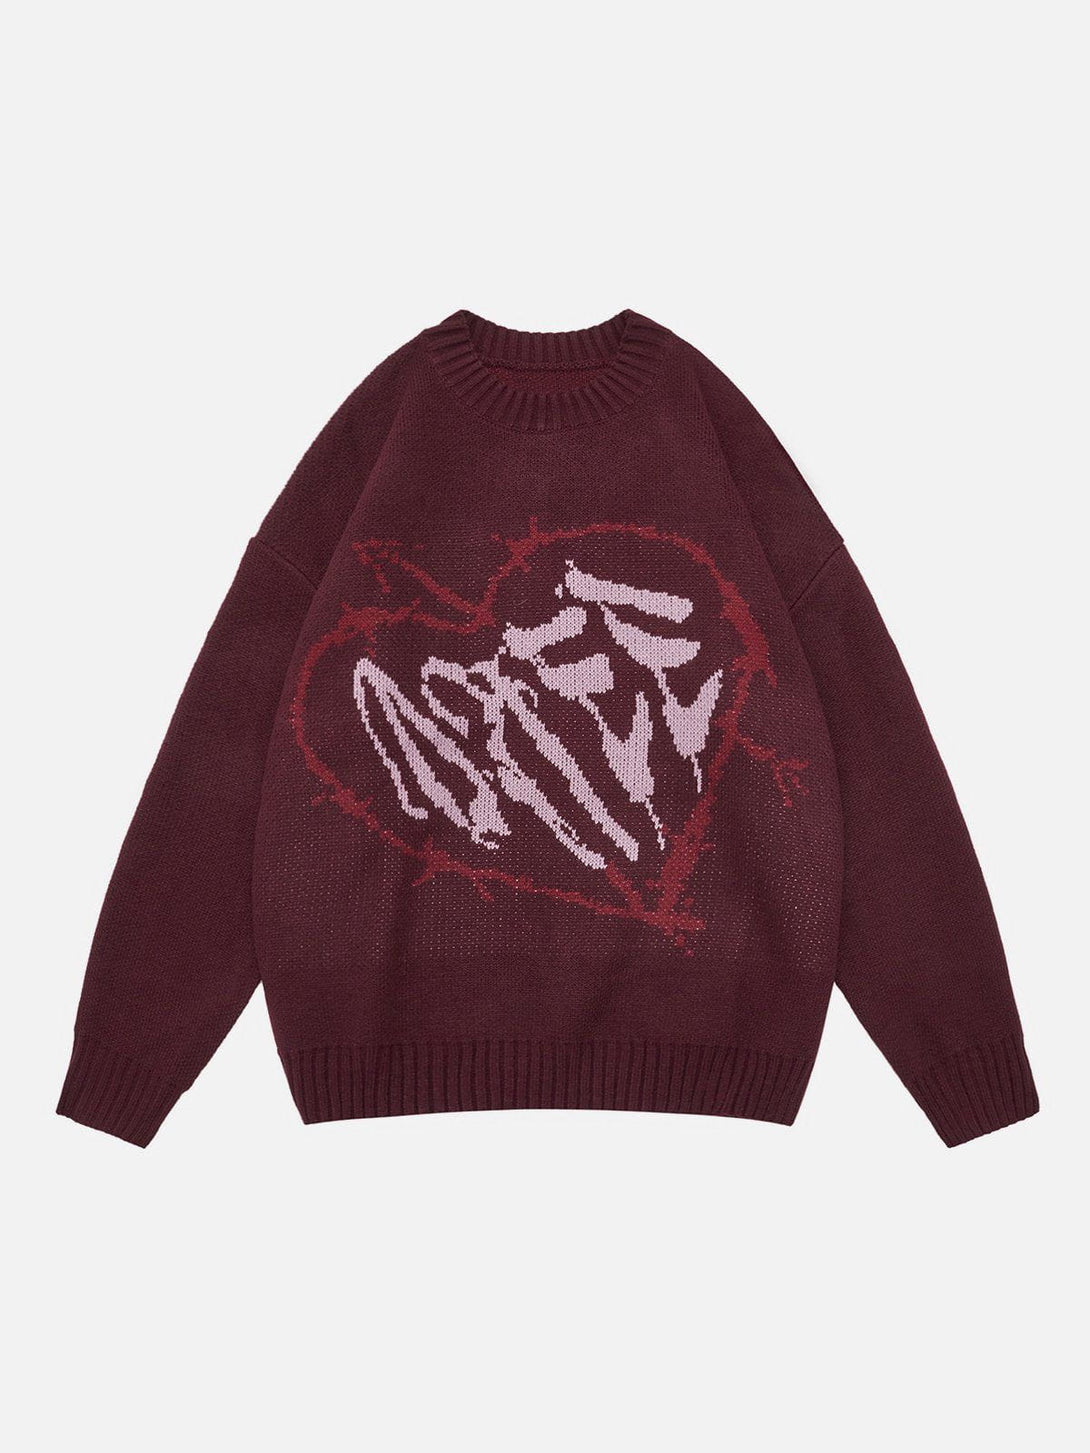 Majesda® - Letter Heart Pattern Sweater outfit ideas streetwear fashion